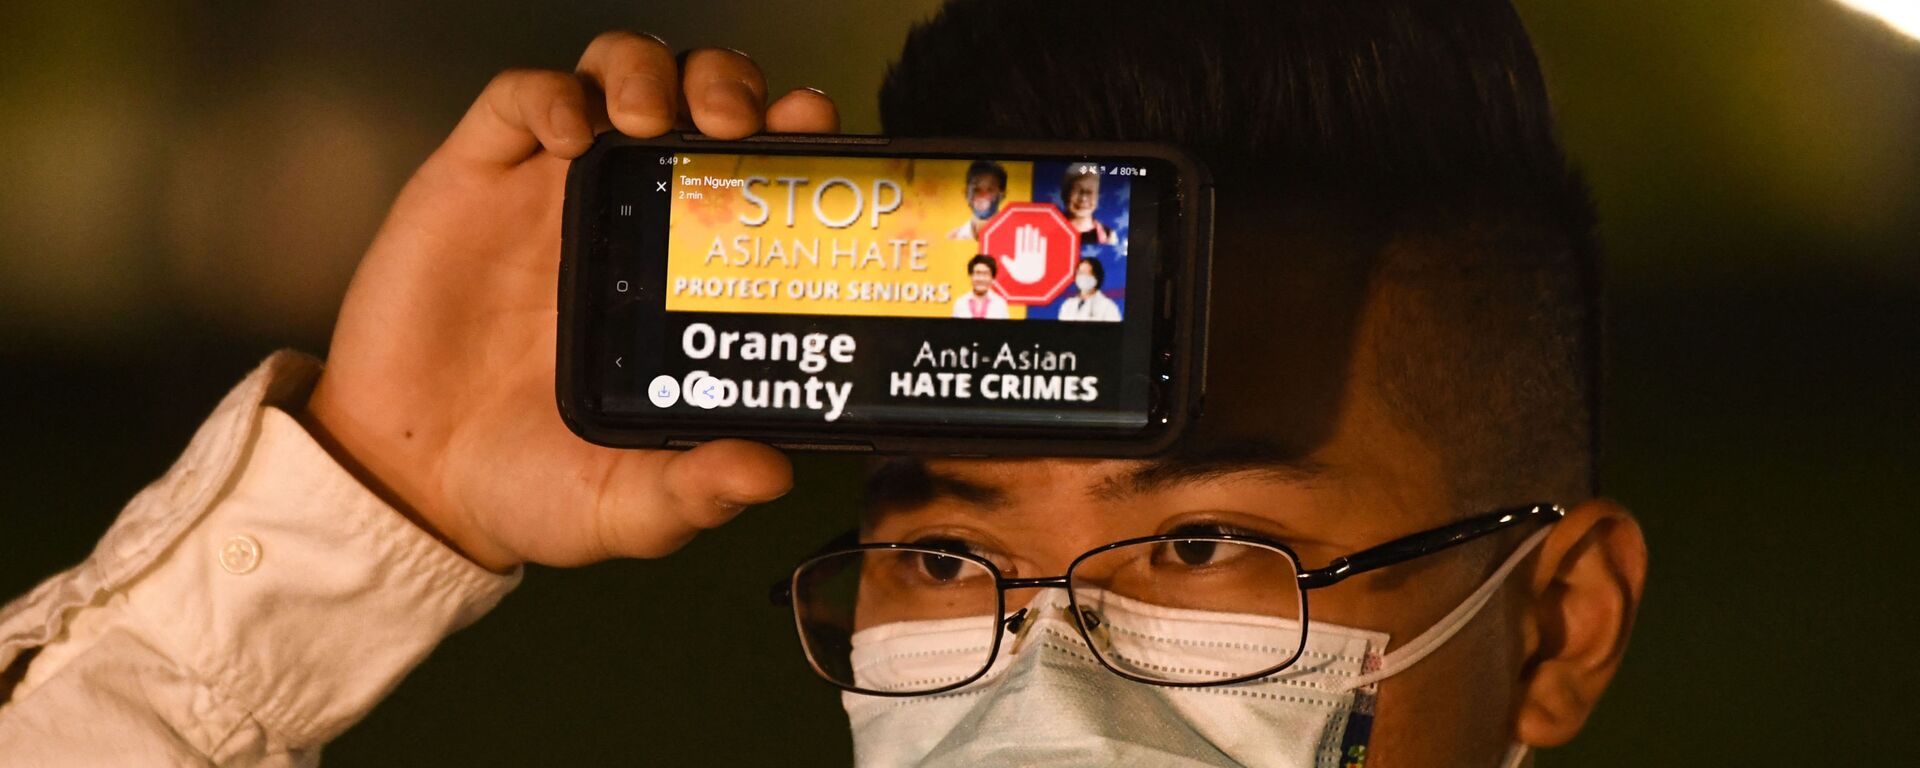 Một người đàn ông cầm điện thoại với thông điệp về tội ác căm thù đối với người Mỹ gốc Á trong một cuộc đấu trí ở Fountain Valley, California - Sputnik Việt Nam, 1920, 19.03.2021